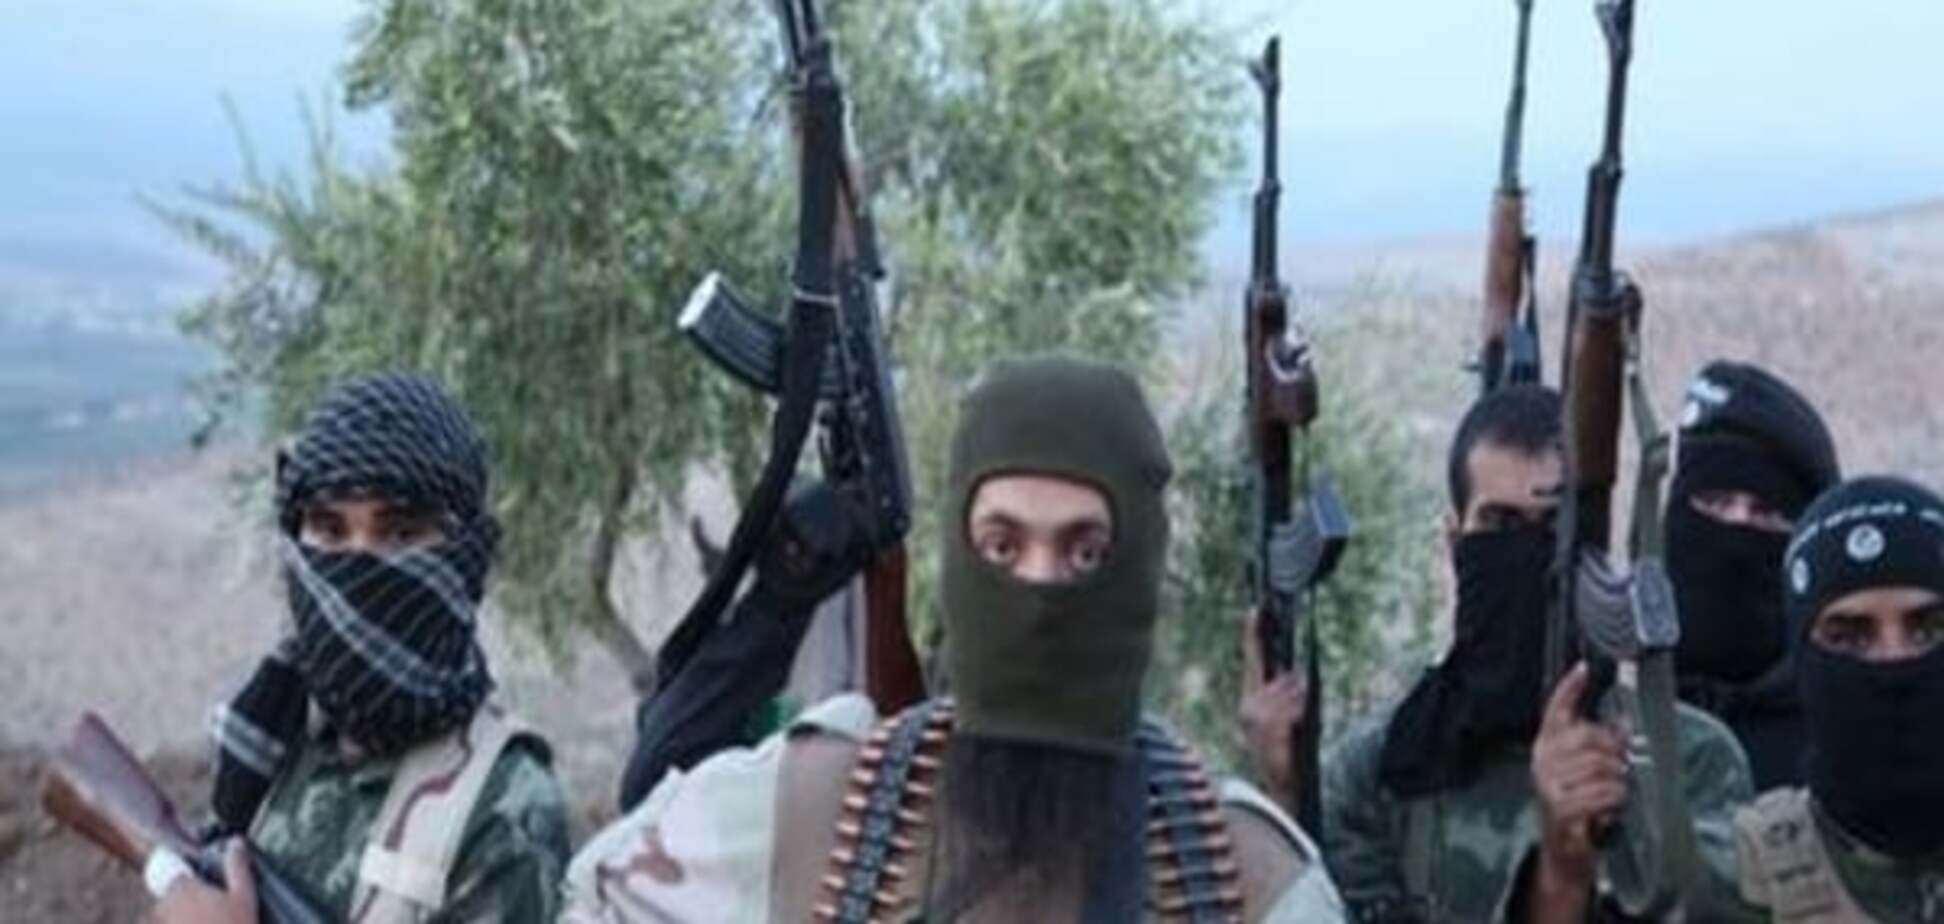 Источники финансирования ИГИЛ: откуда деньги у террористов